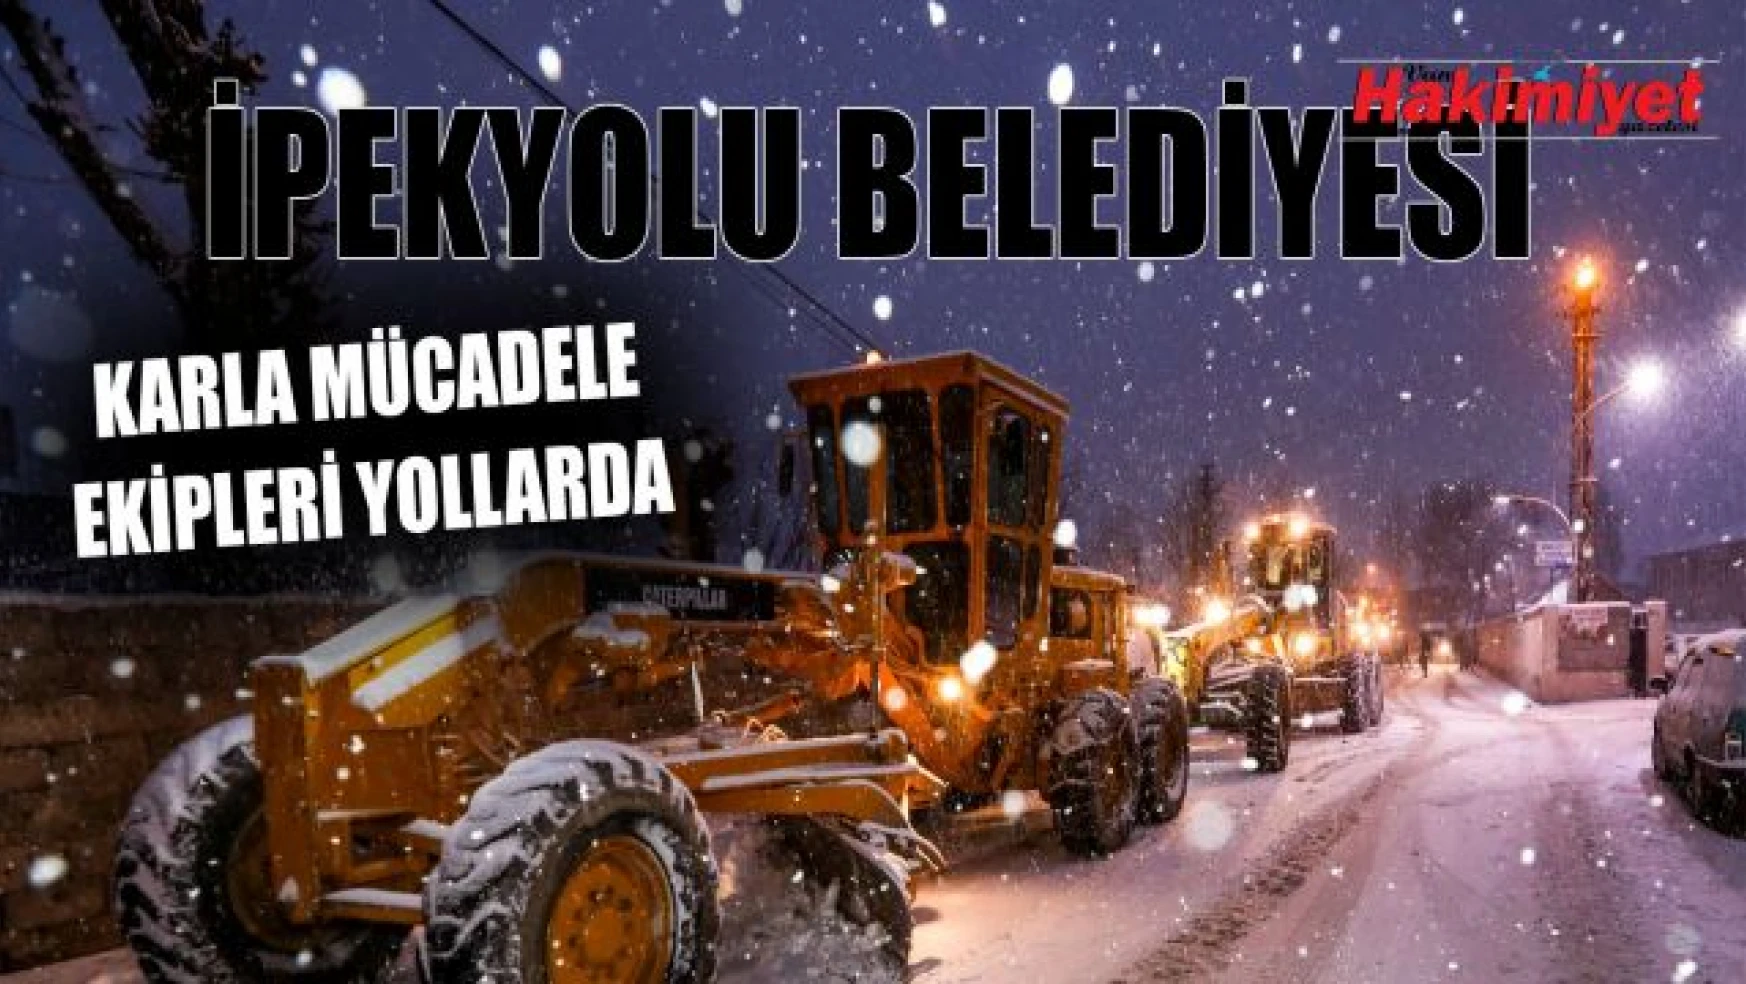 İpekyolu Belediyesi Karla mücadele ekipleri yollarda